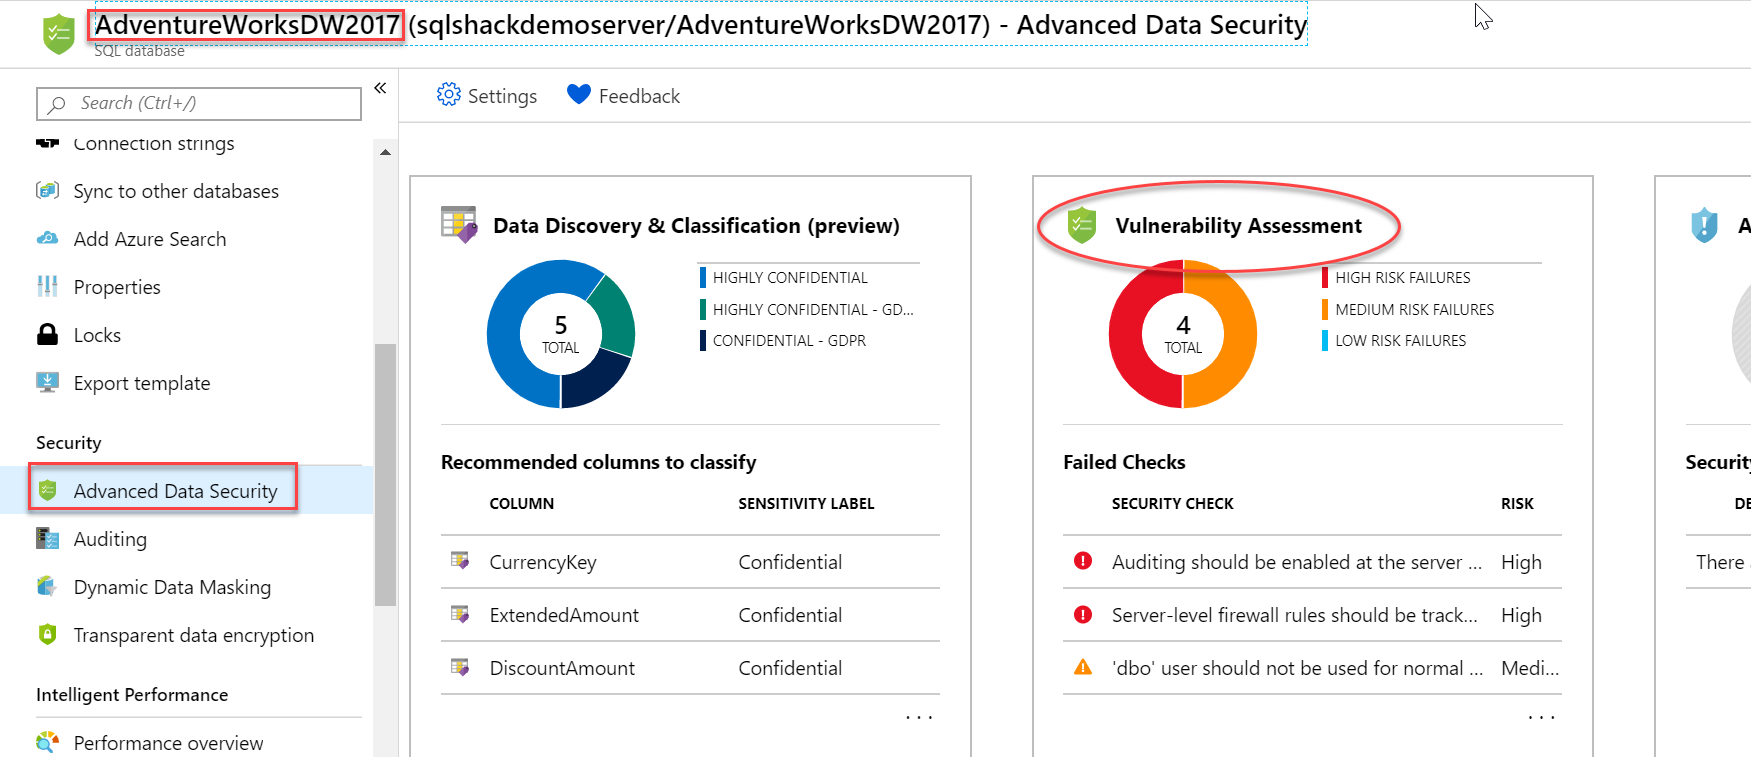 Open Vulnerability Assessment tile in Azure SQL Database.